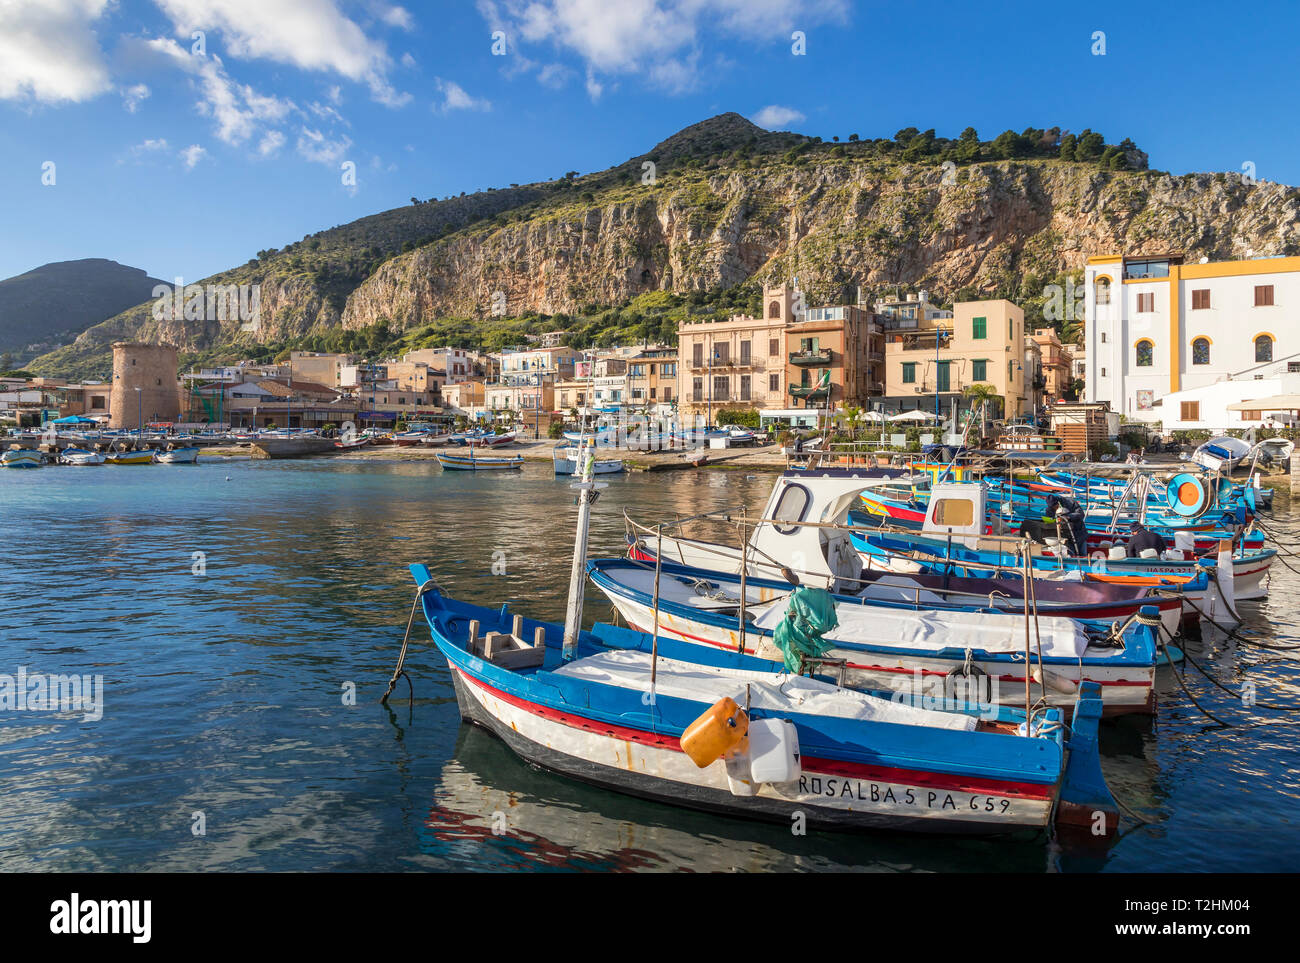 Bunte Boote ankern im Hafen von Mondello mit Blick auf Mount Gallo im Hintergrund, Palermo, Sizilien, Italien, Europa Stockfoto